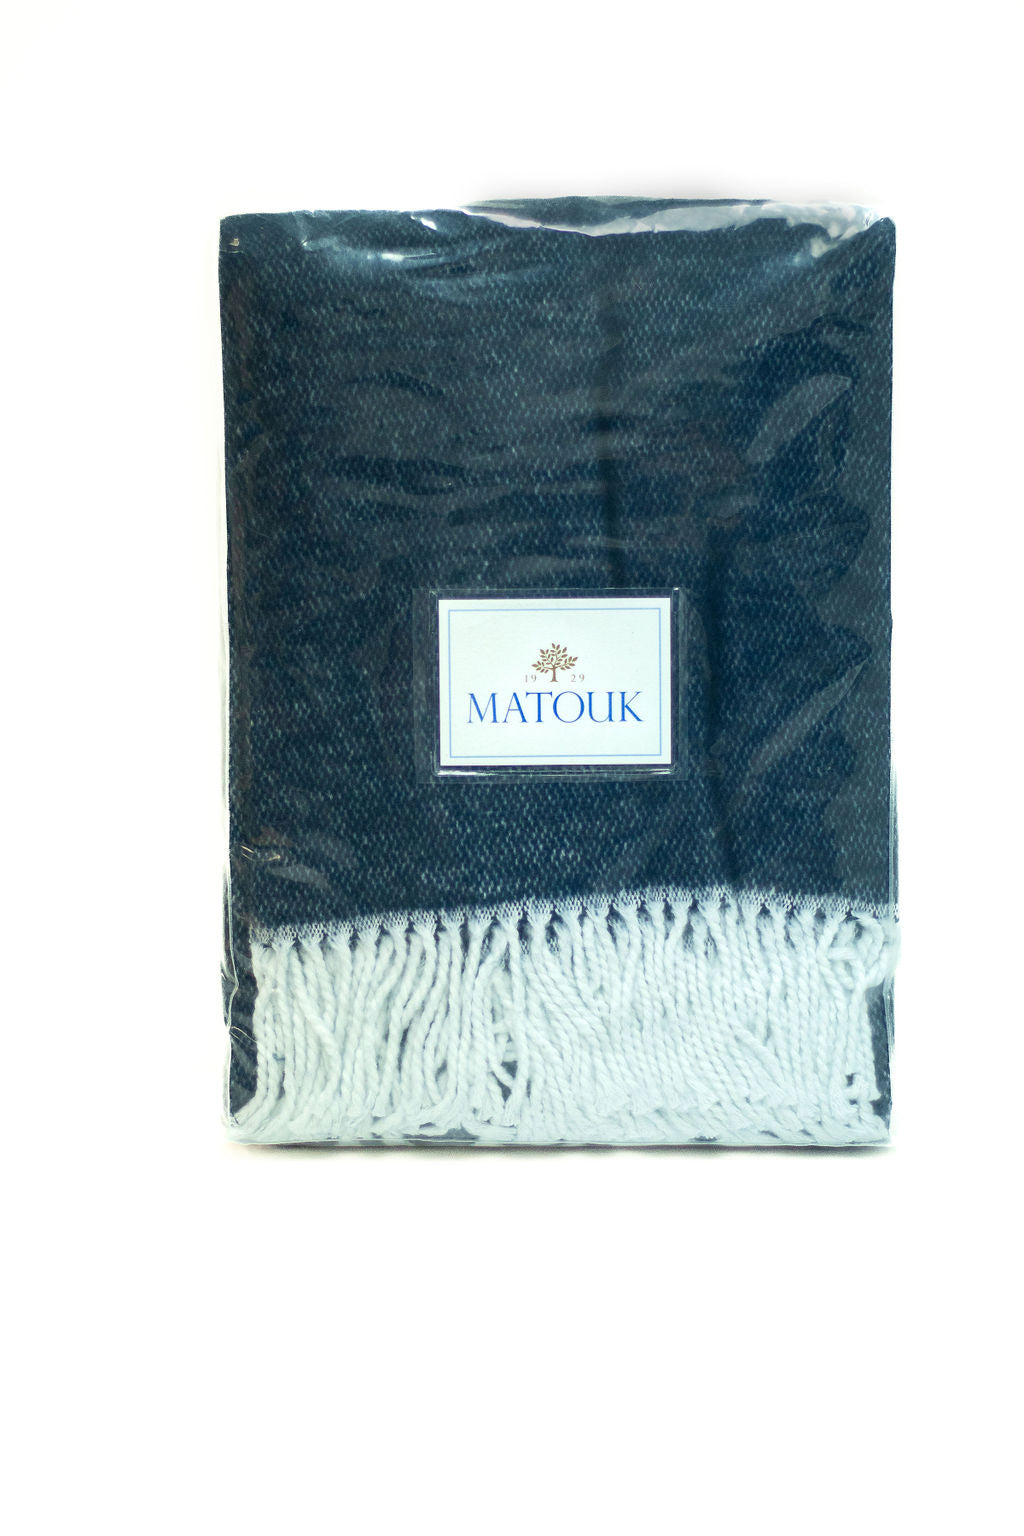 Matouk Blanket - Navy